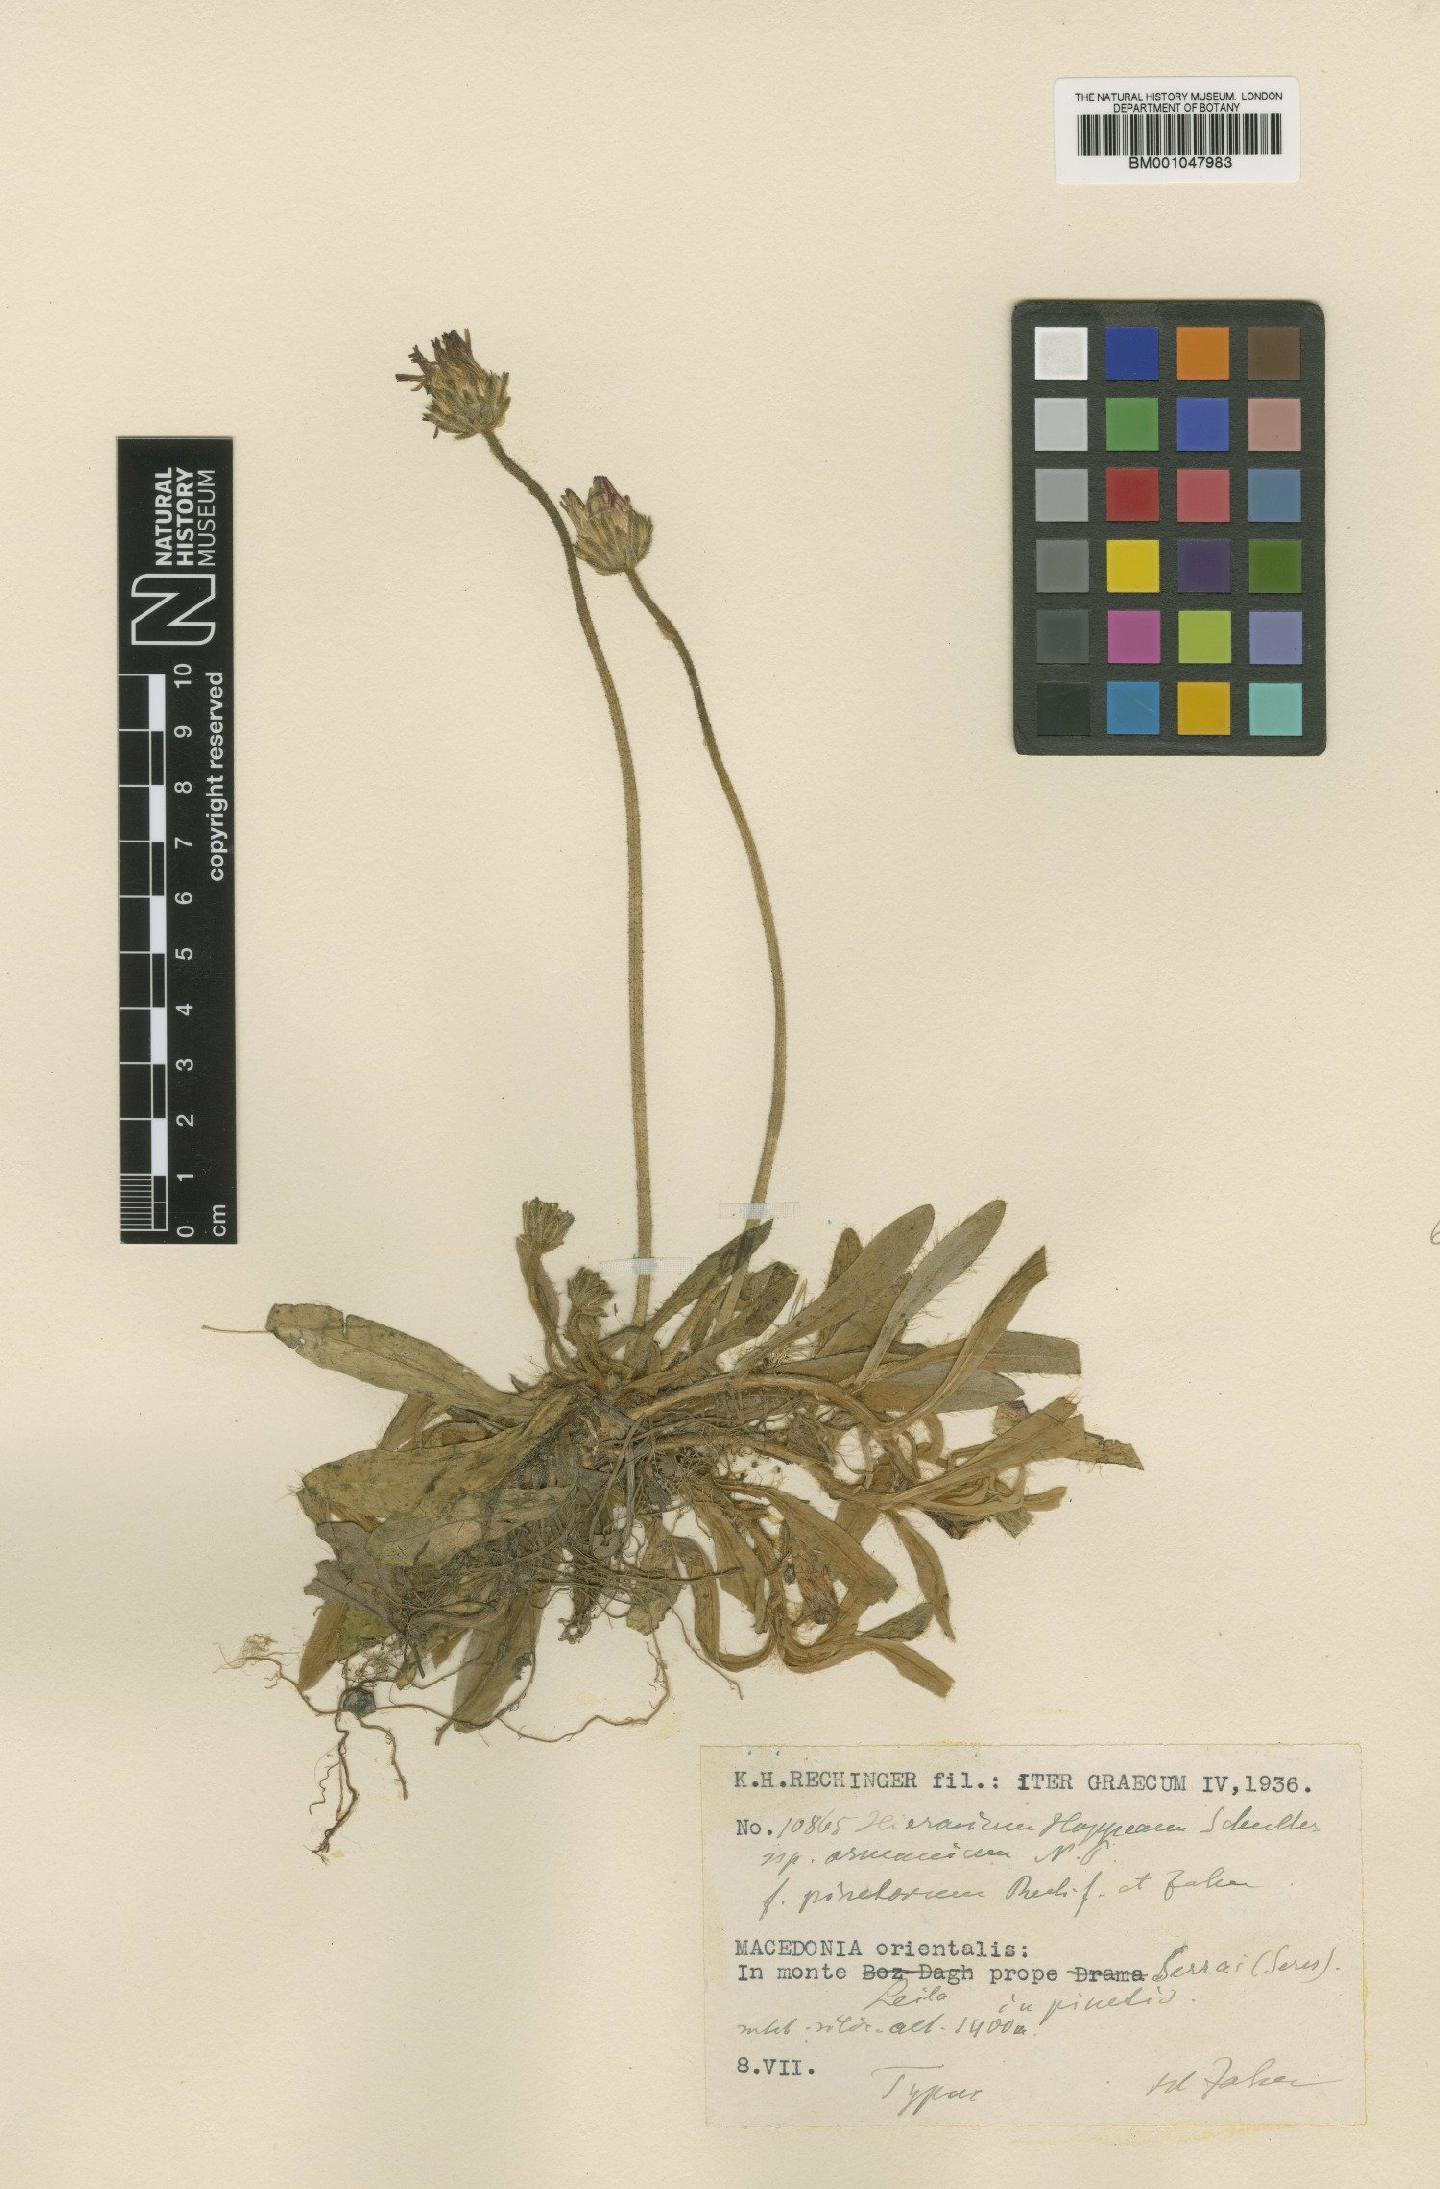 To NHMUK collection (Hieracium hoppeanum subsp. osmanicum Nägeli & Peter; Type; NHMUK:ecatalogue:2820445)